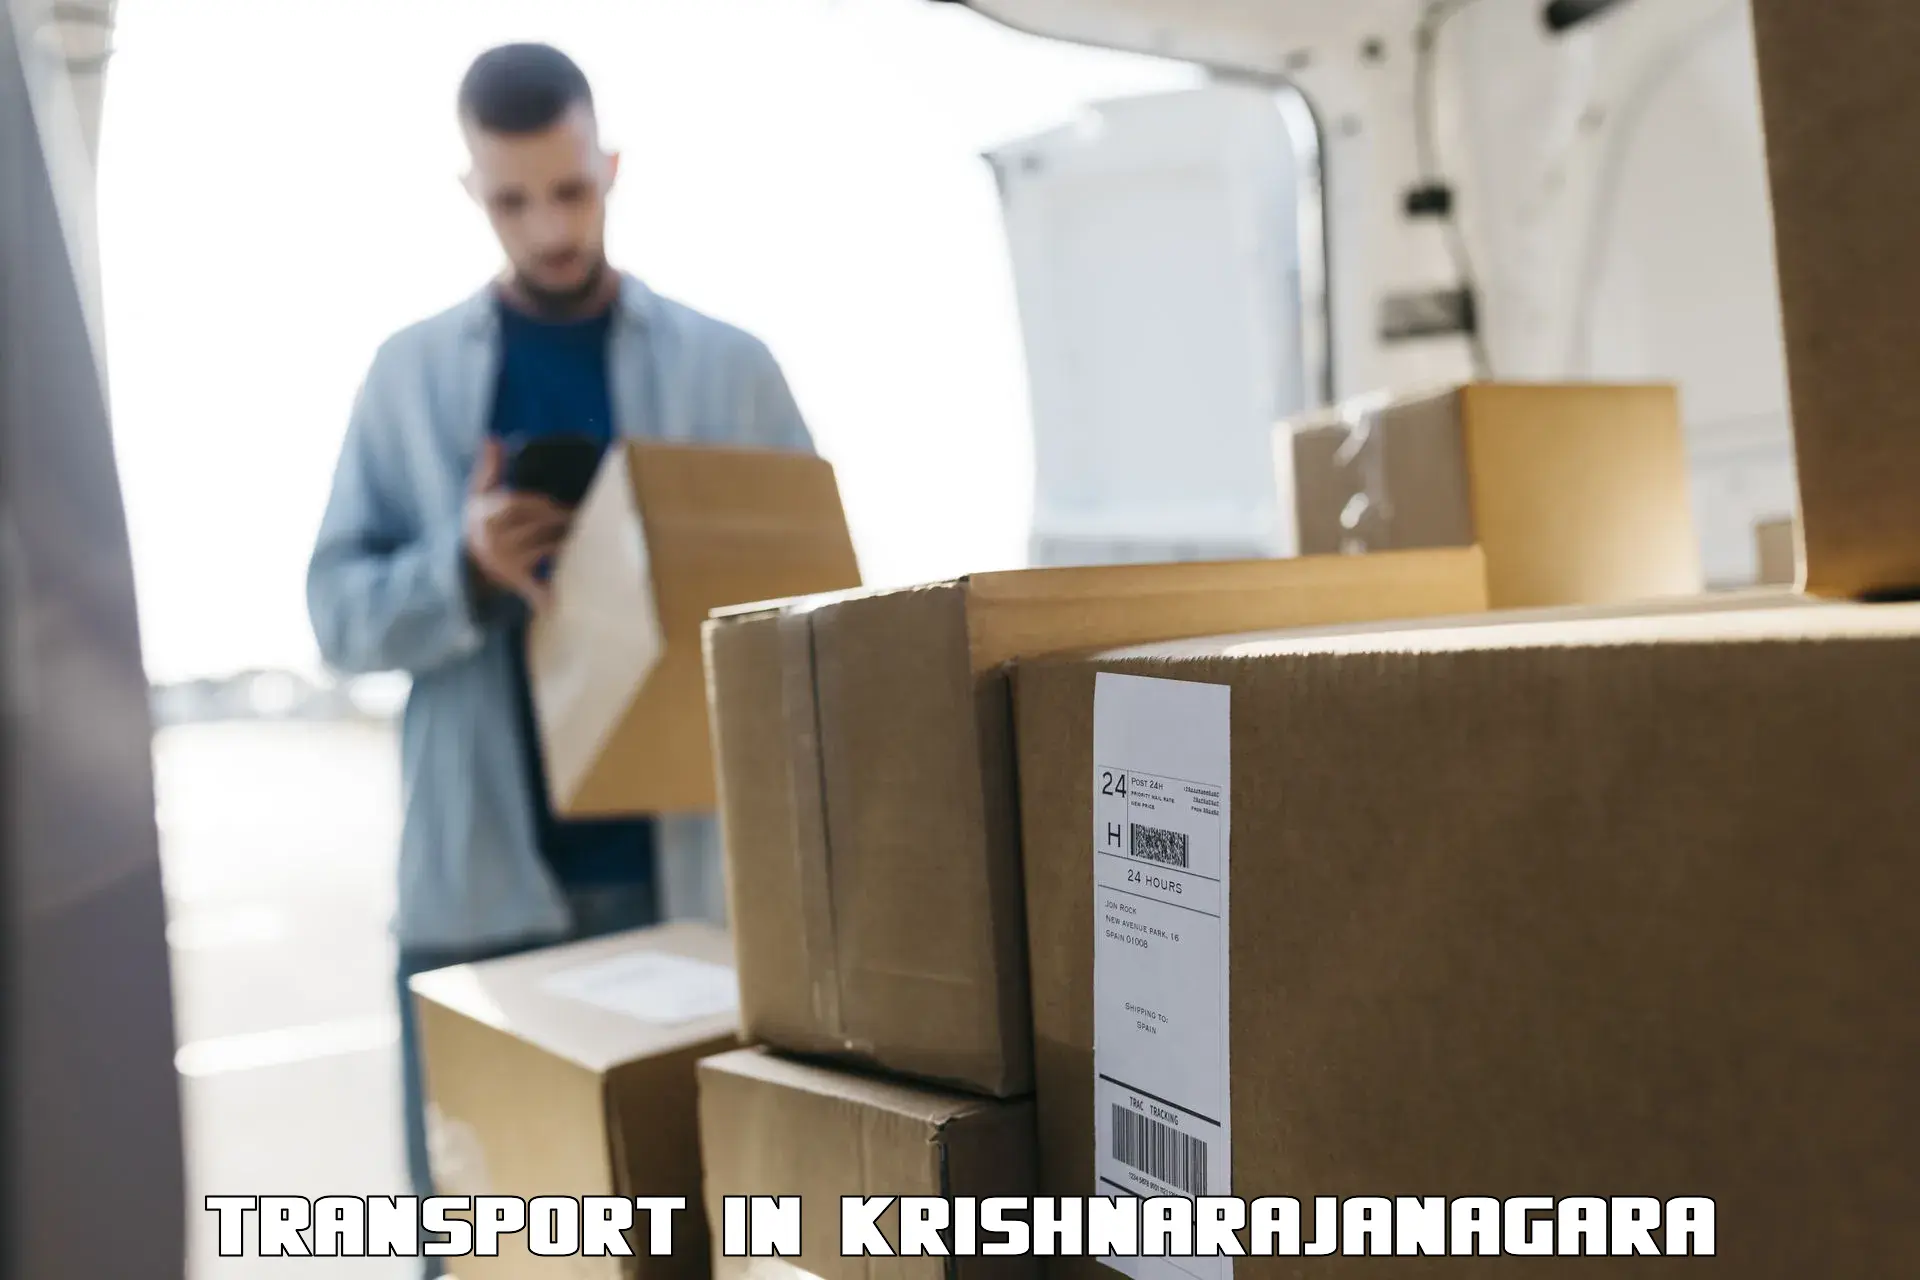 Delivery service in Krishnarajanagara